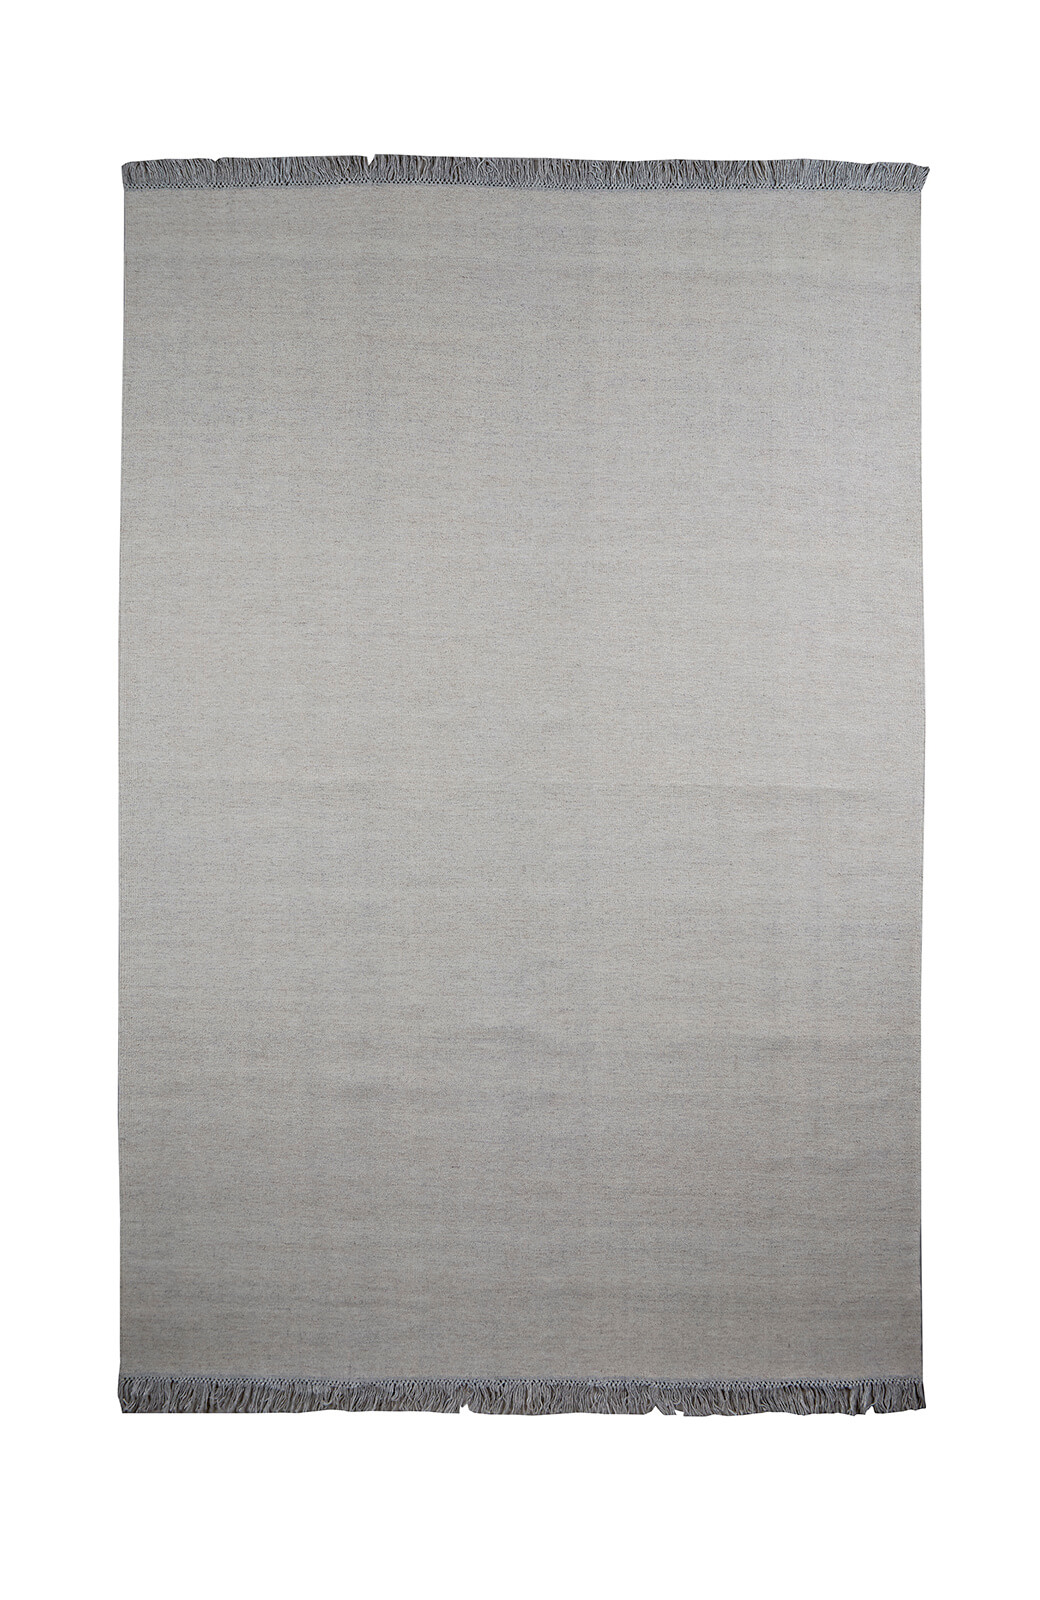 Escape Kelim Teppich mit Nähten, 170 x 240 cm, light beige